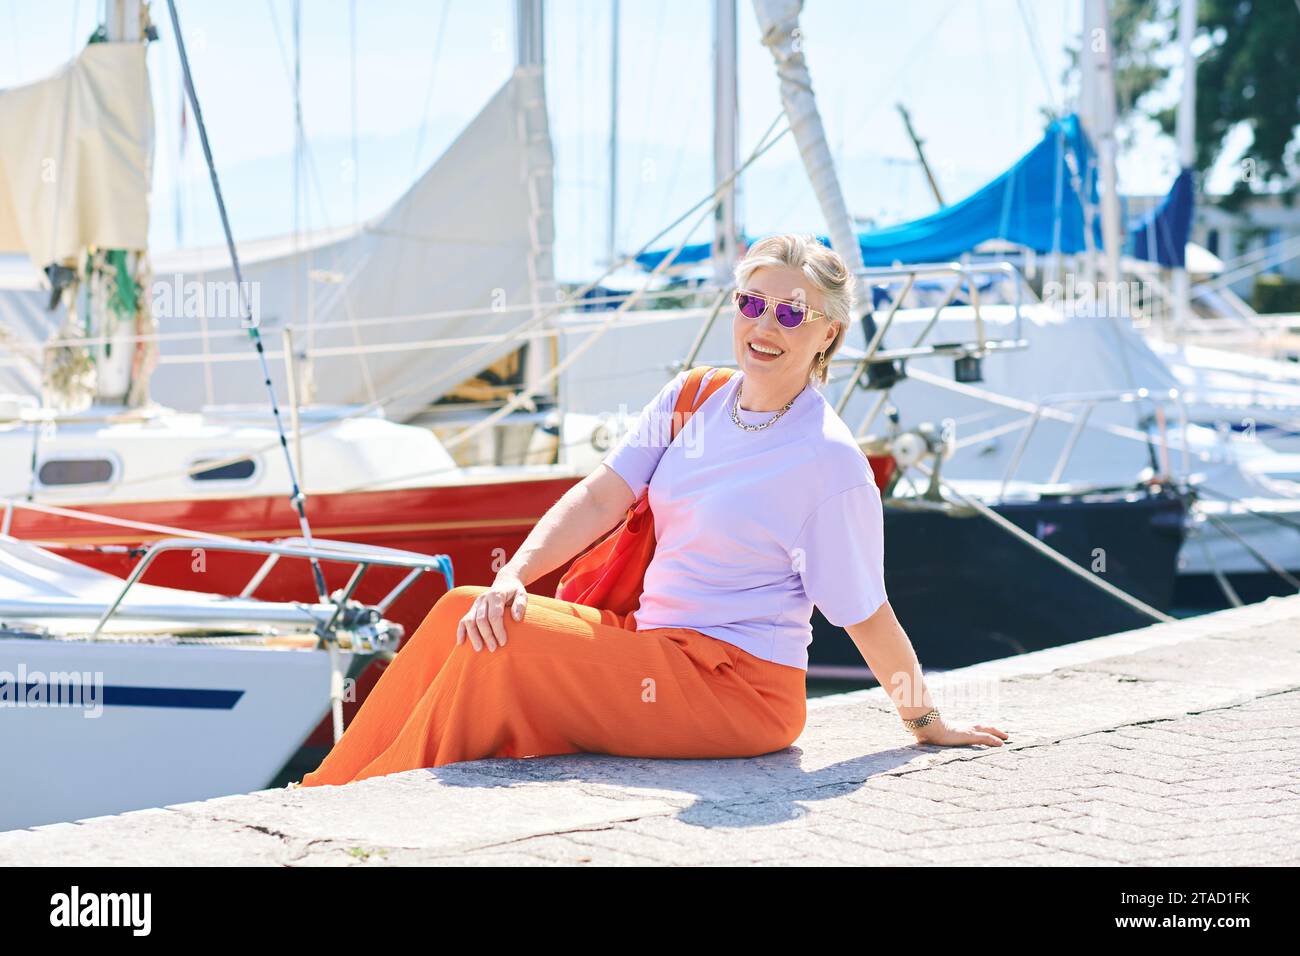 Outdoormodeporträt von mittlerem Alter 50 - 55 Jahre alte Frau in bunten Outfit, posiert am See oder Hafen, Reise- und Urlaubsleben Stockfoto